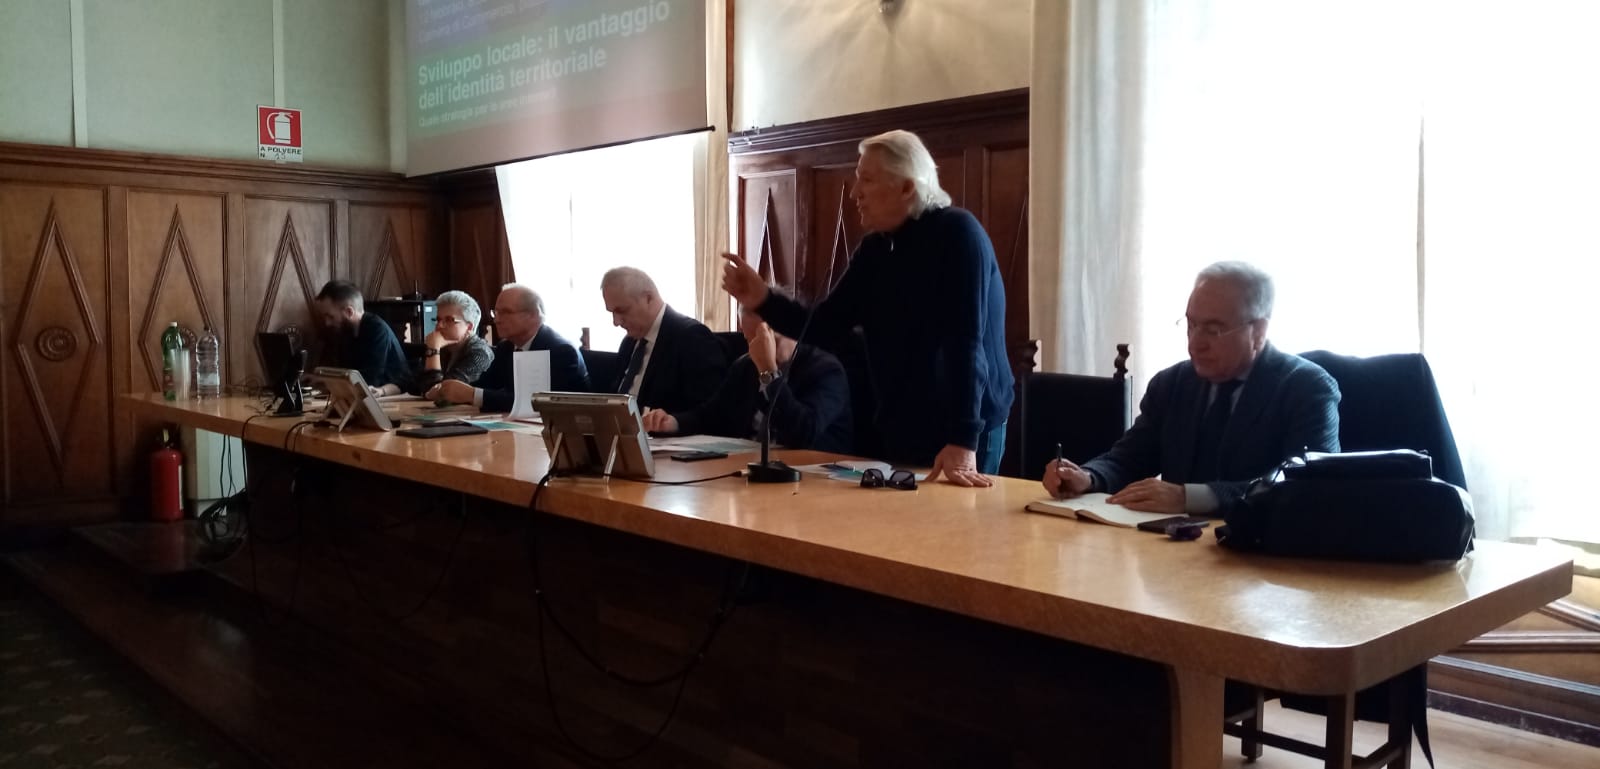 Benevento| Conferenza Agricola Regionale, Masiello: bisogna puntare sul valore dell’agricoltura